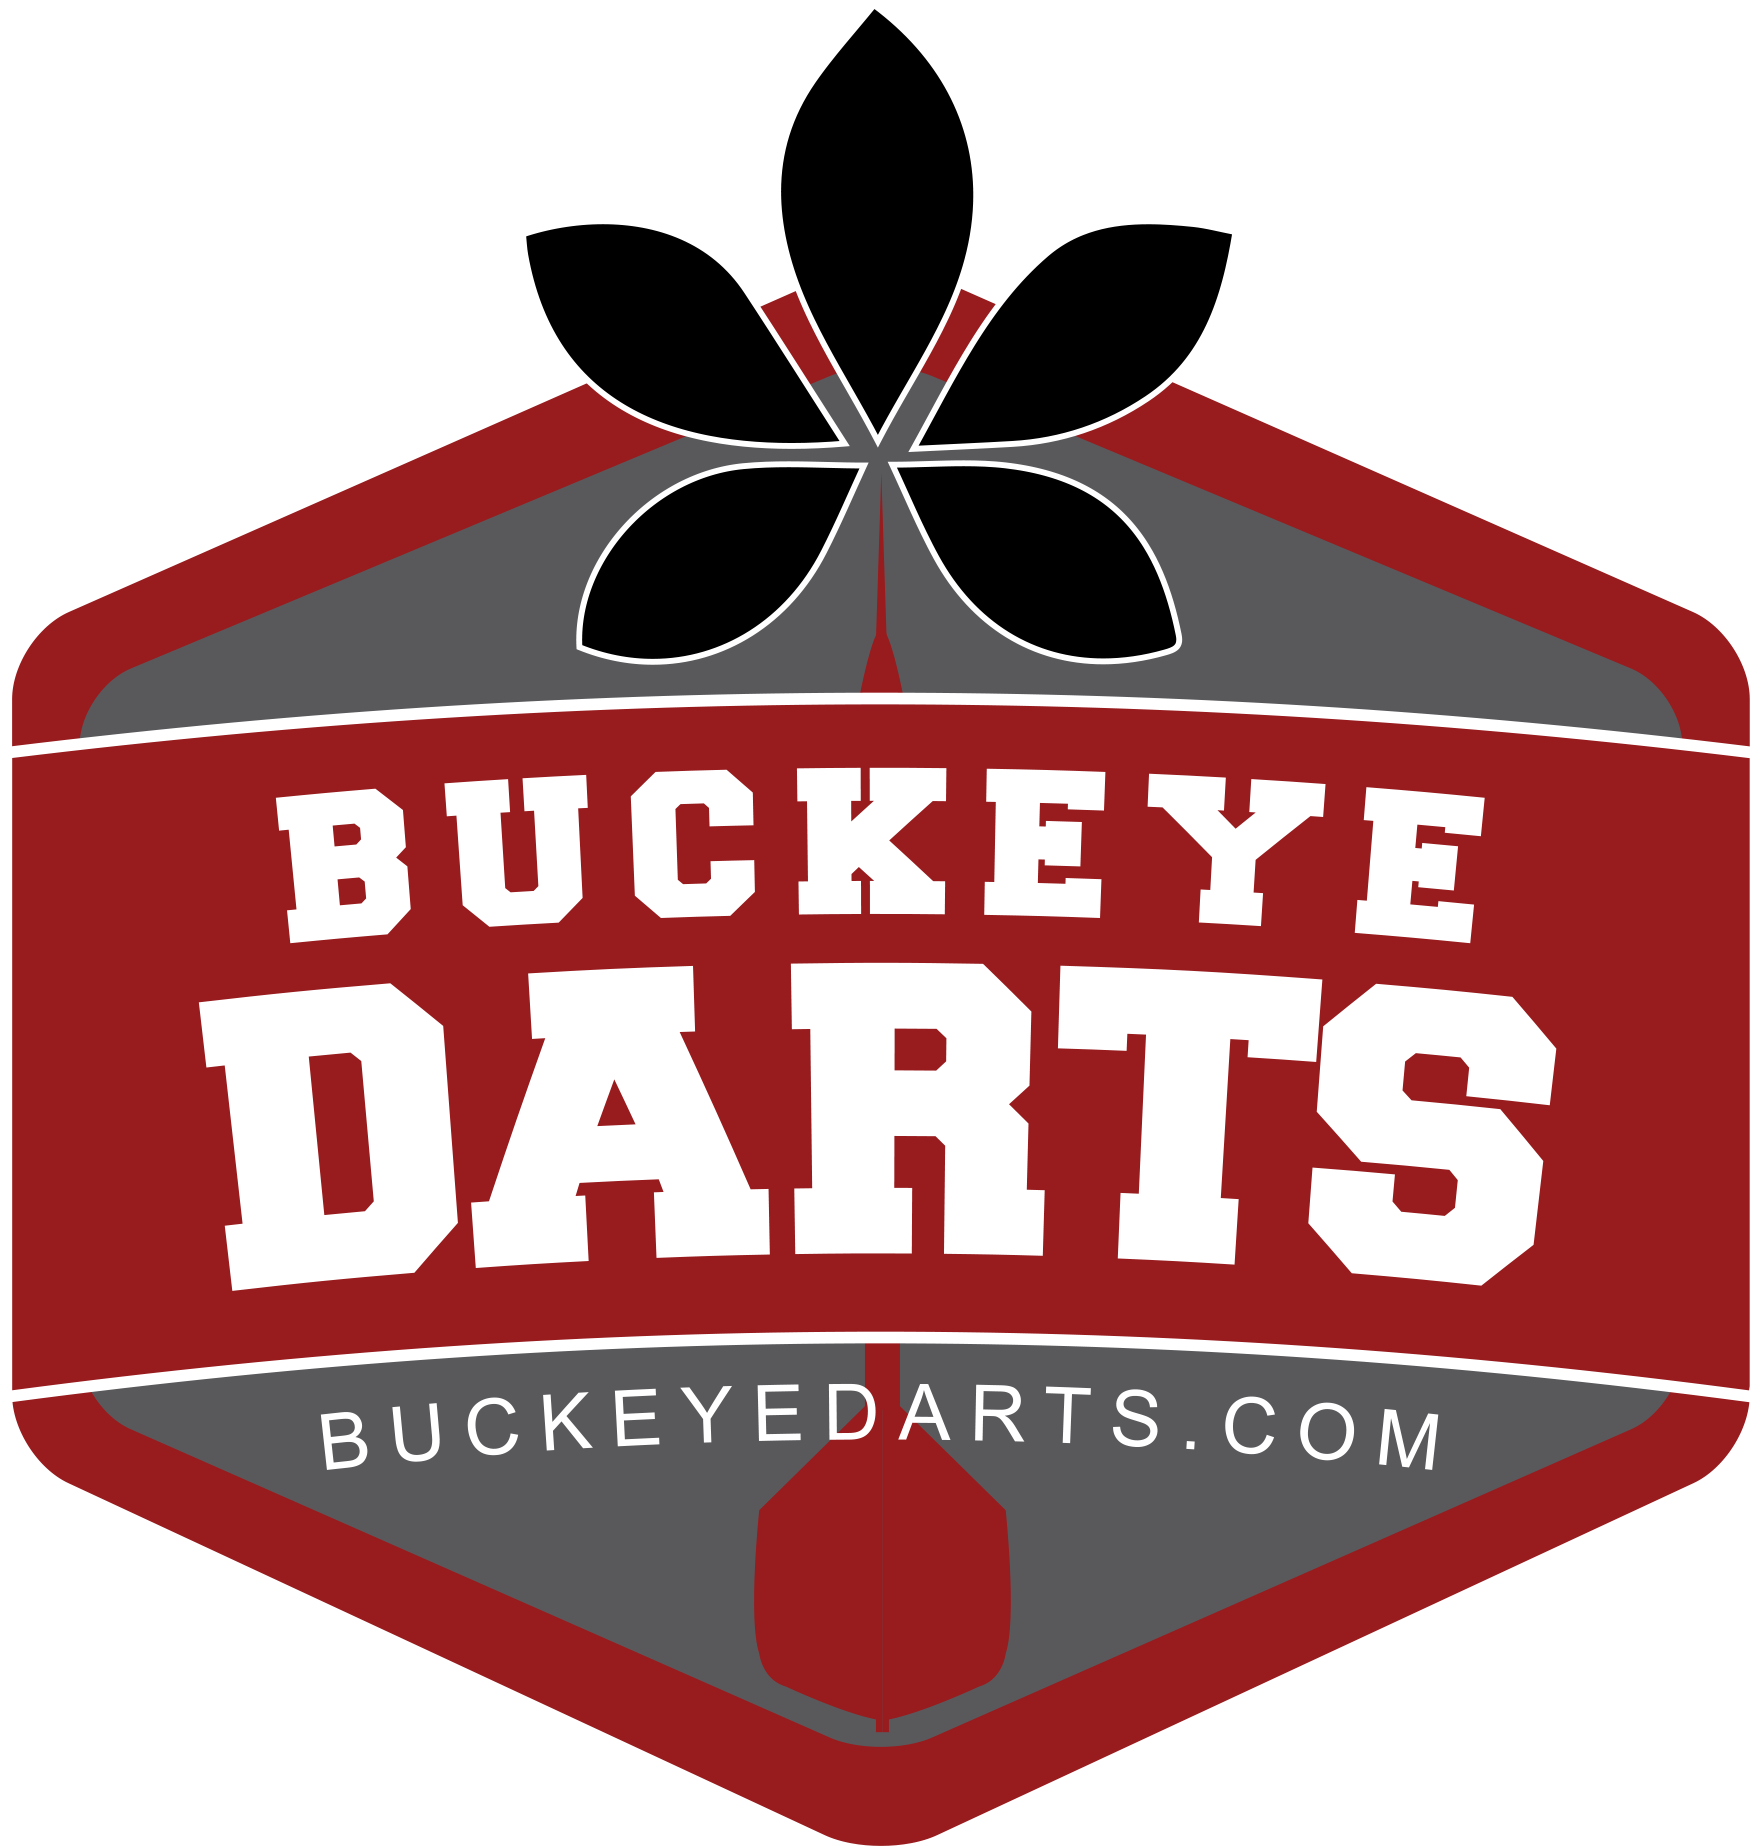 Buckeye Darts